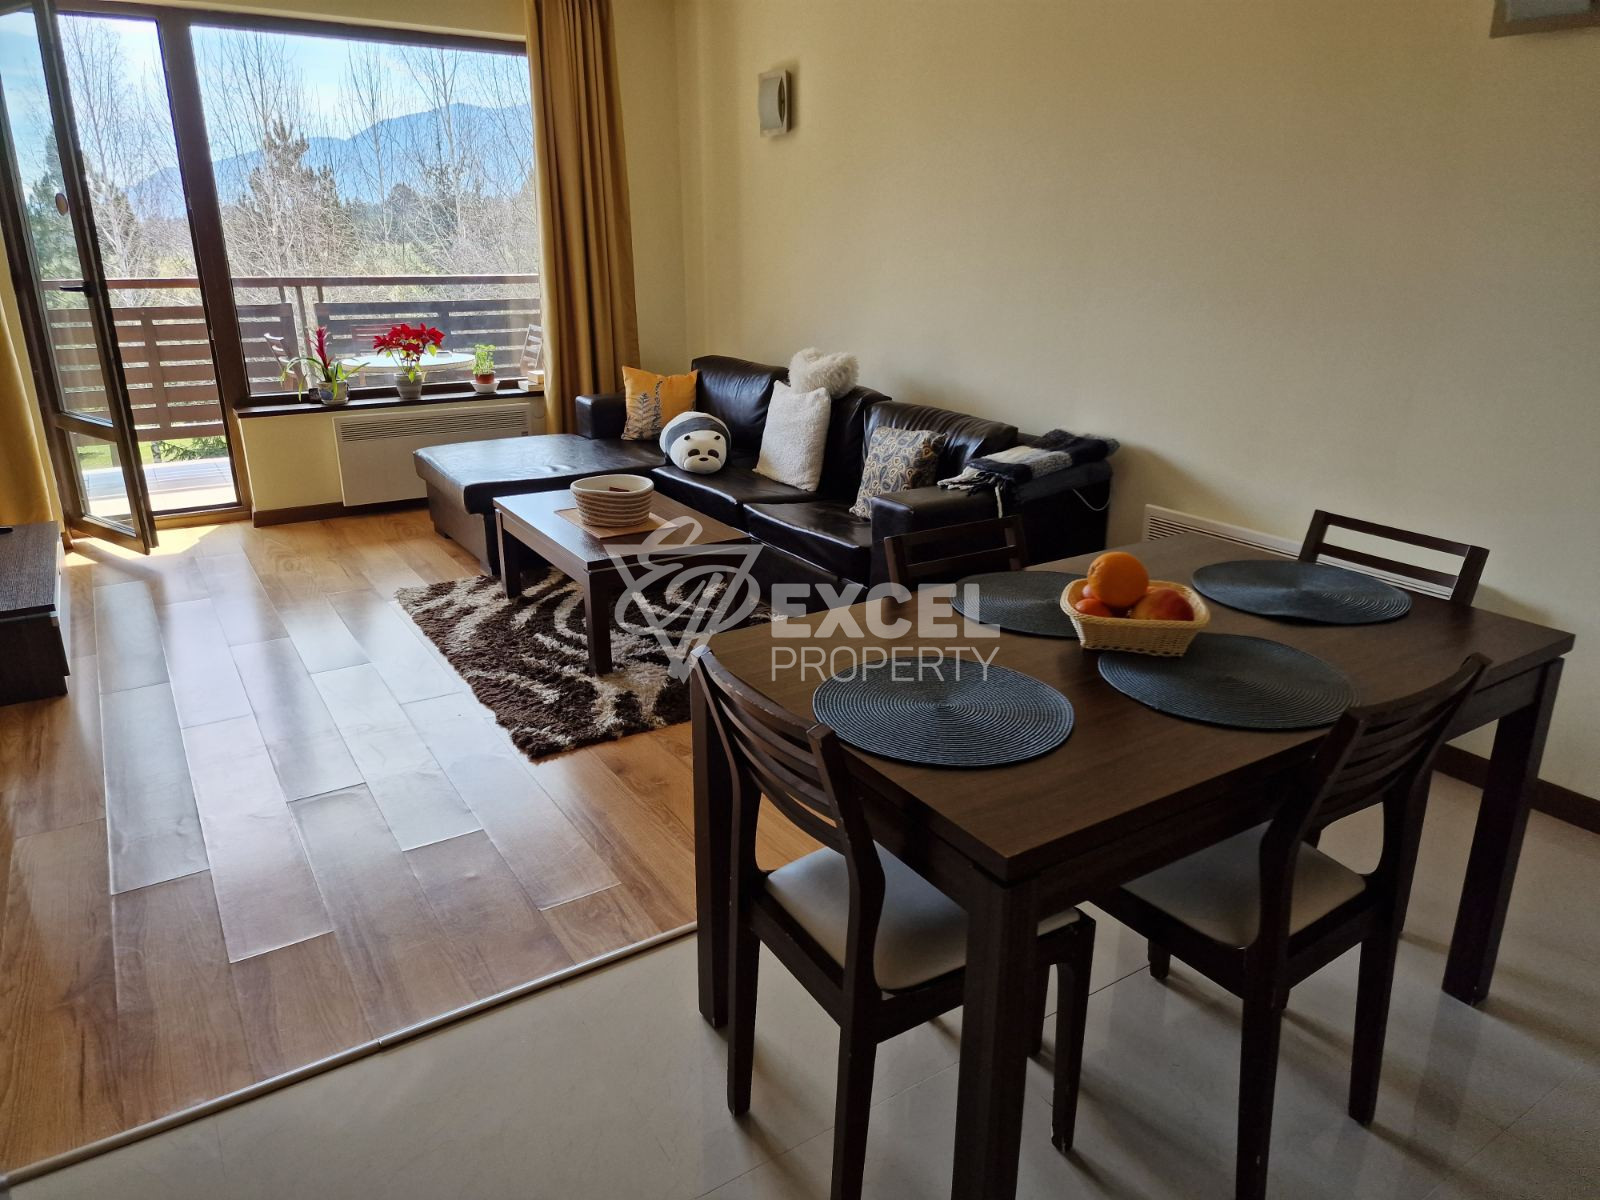 Тристаен апартамент за продажба с изглед към Пирин планина в близост до Банско